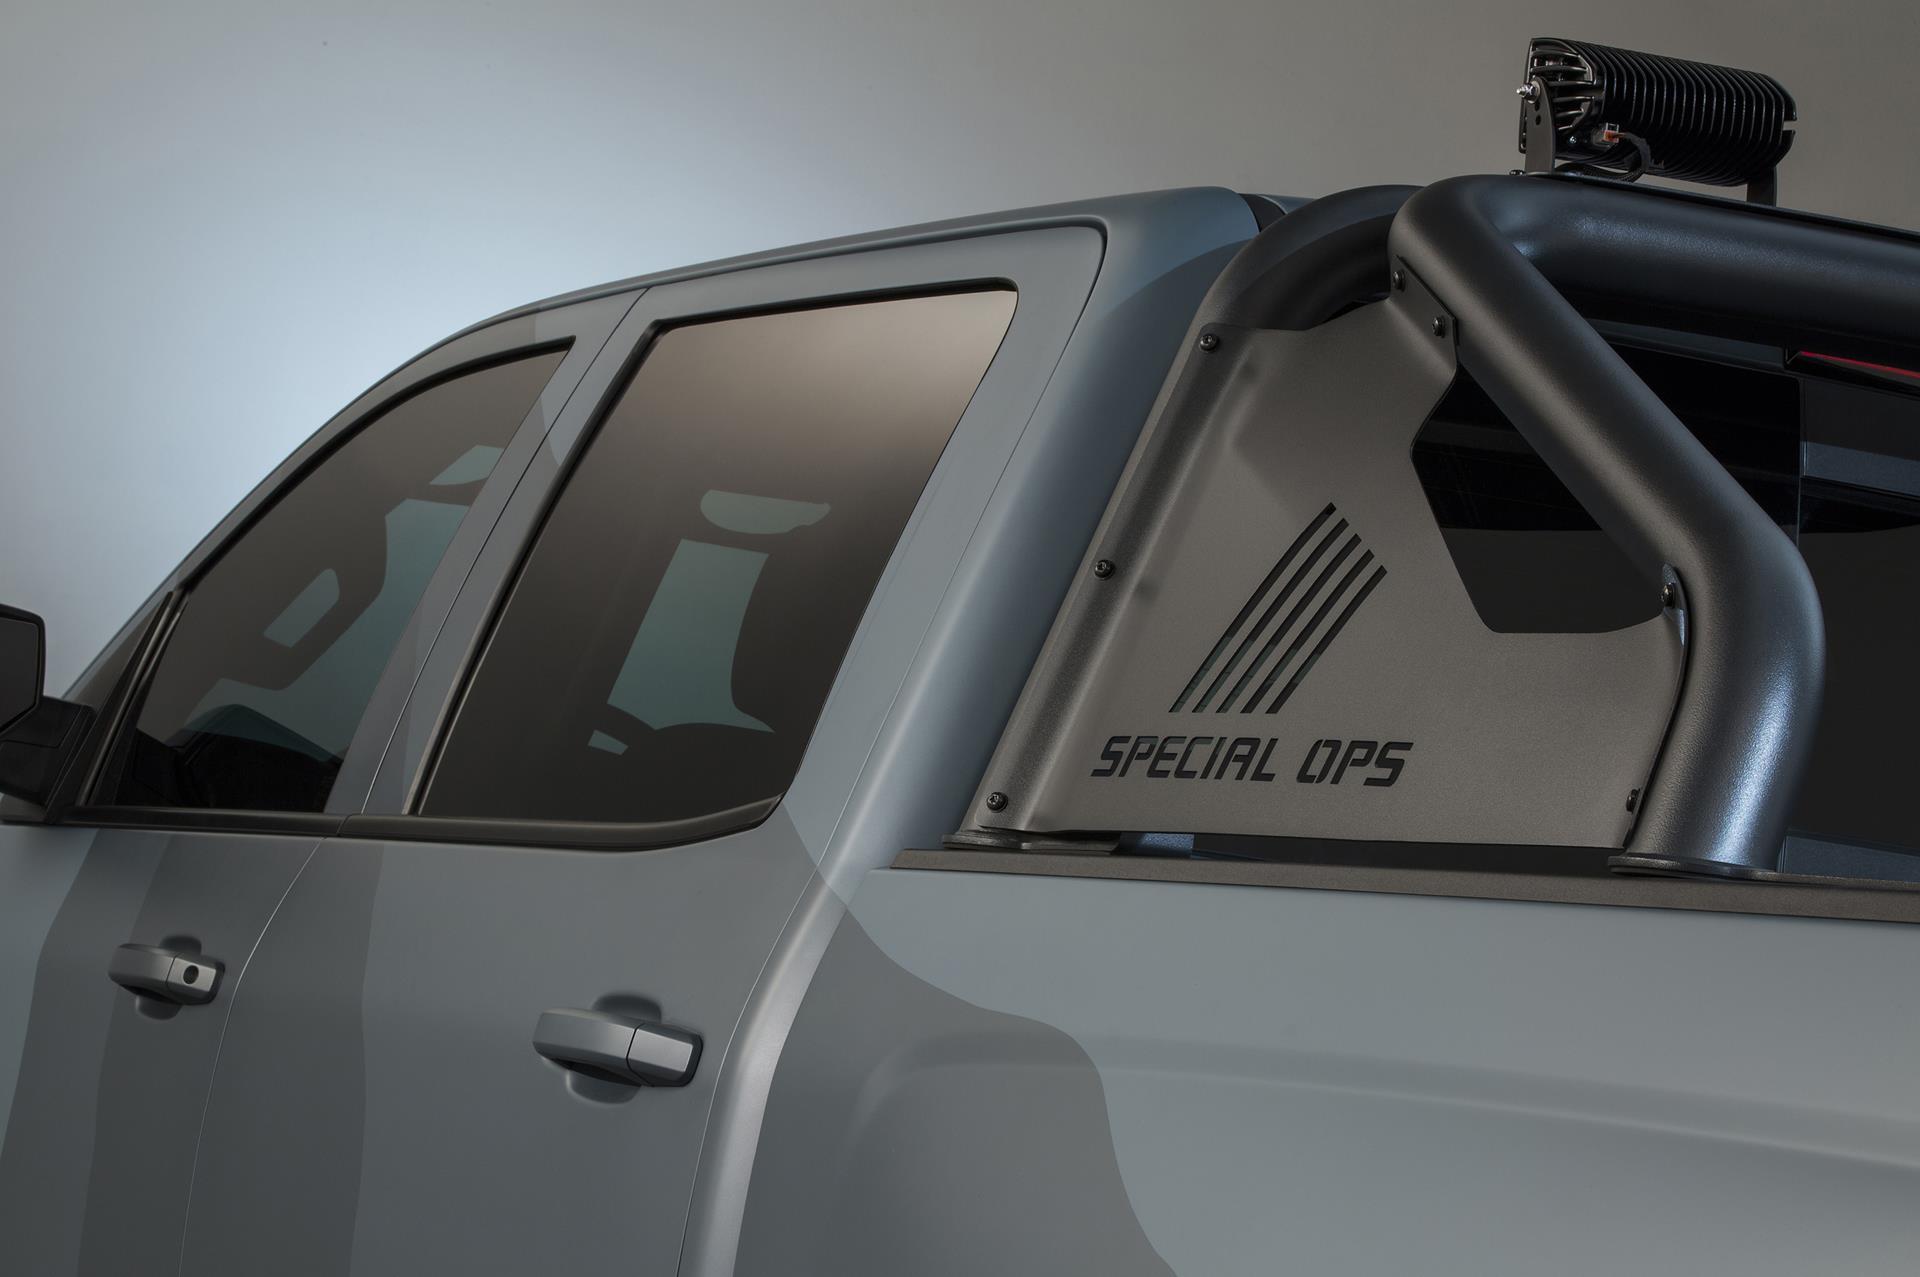 2015 Chevrolet Silverado Special Ops concept